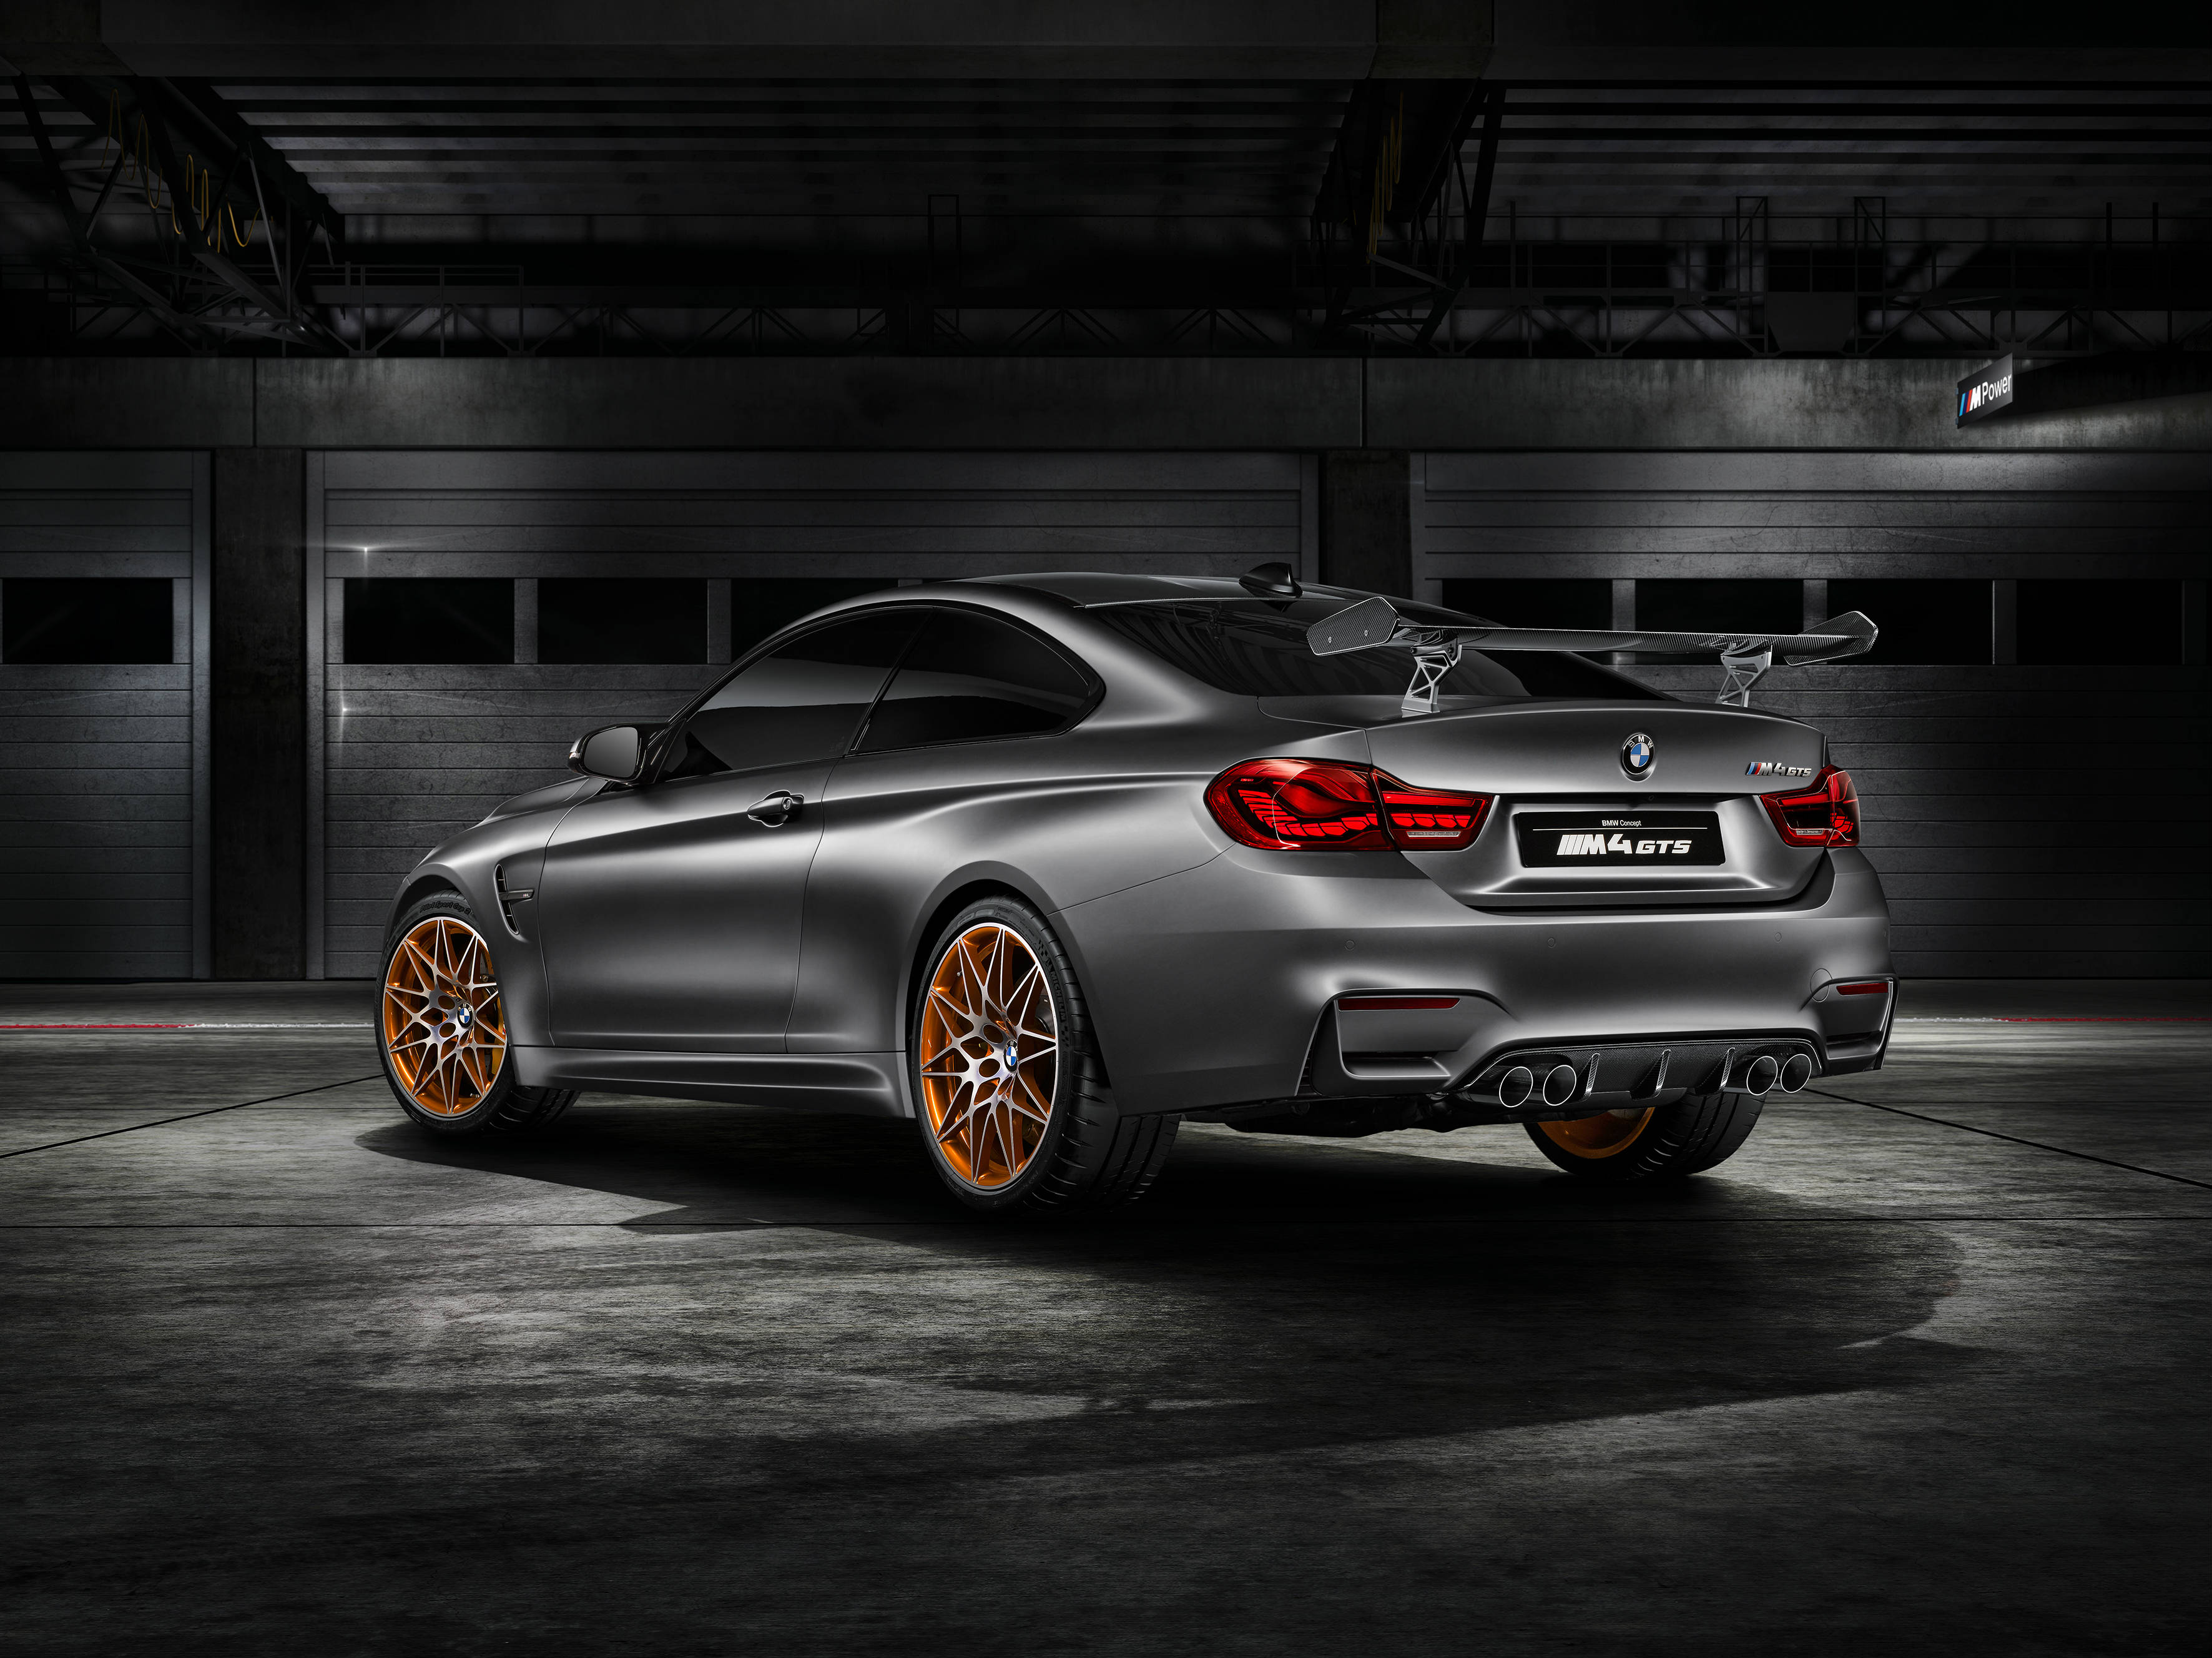 BMW M4 GTS 2016 revealed